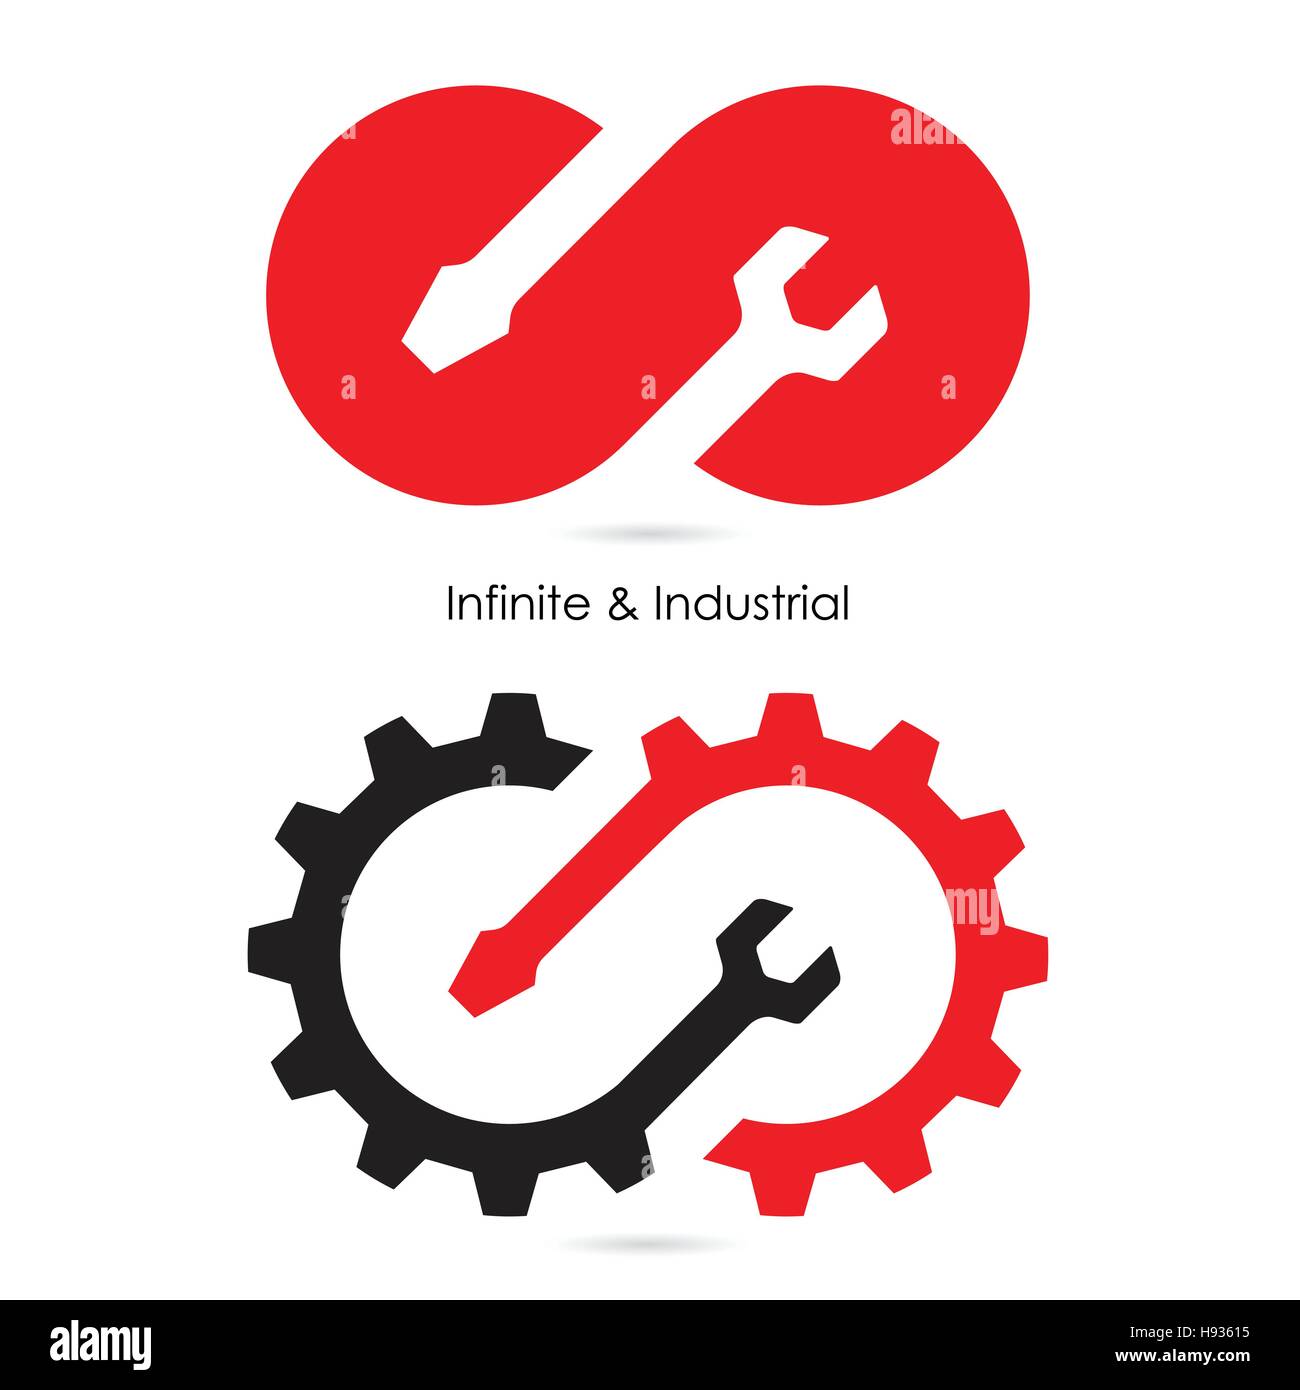 Industrial logo Banque d'images vectorielles - Alamy